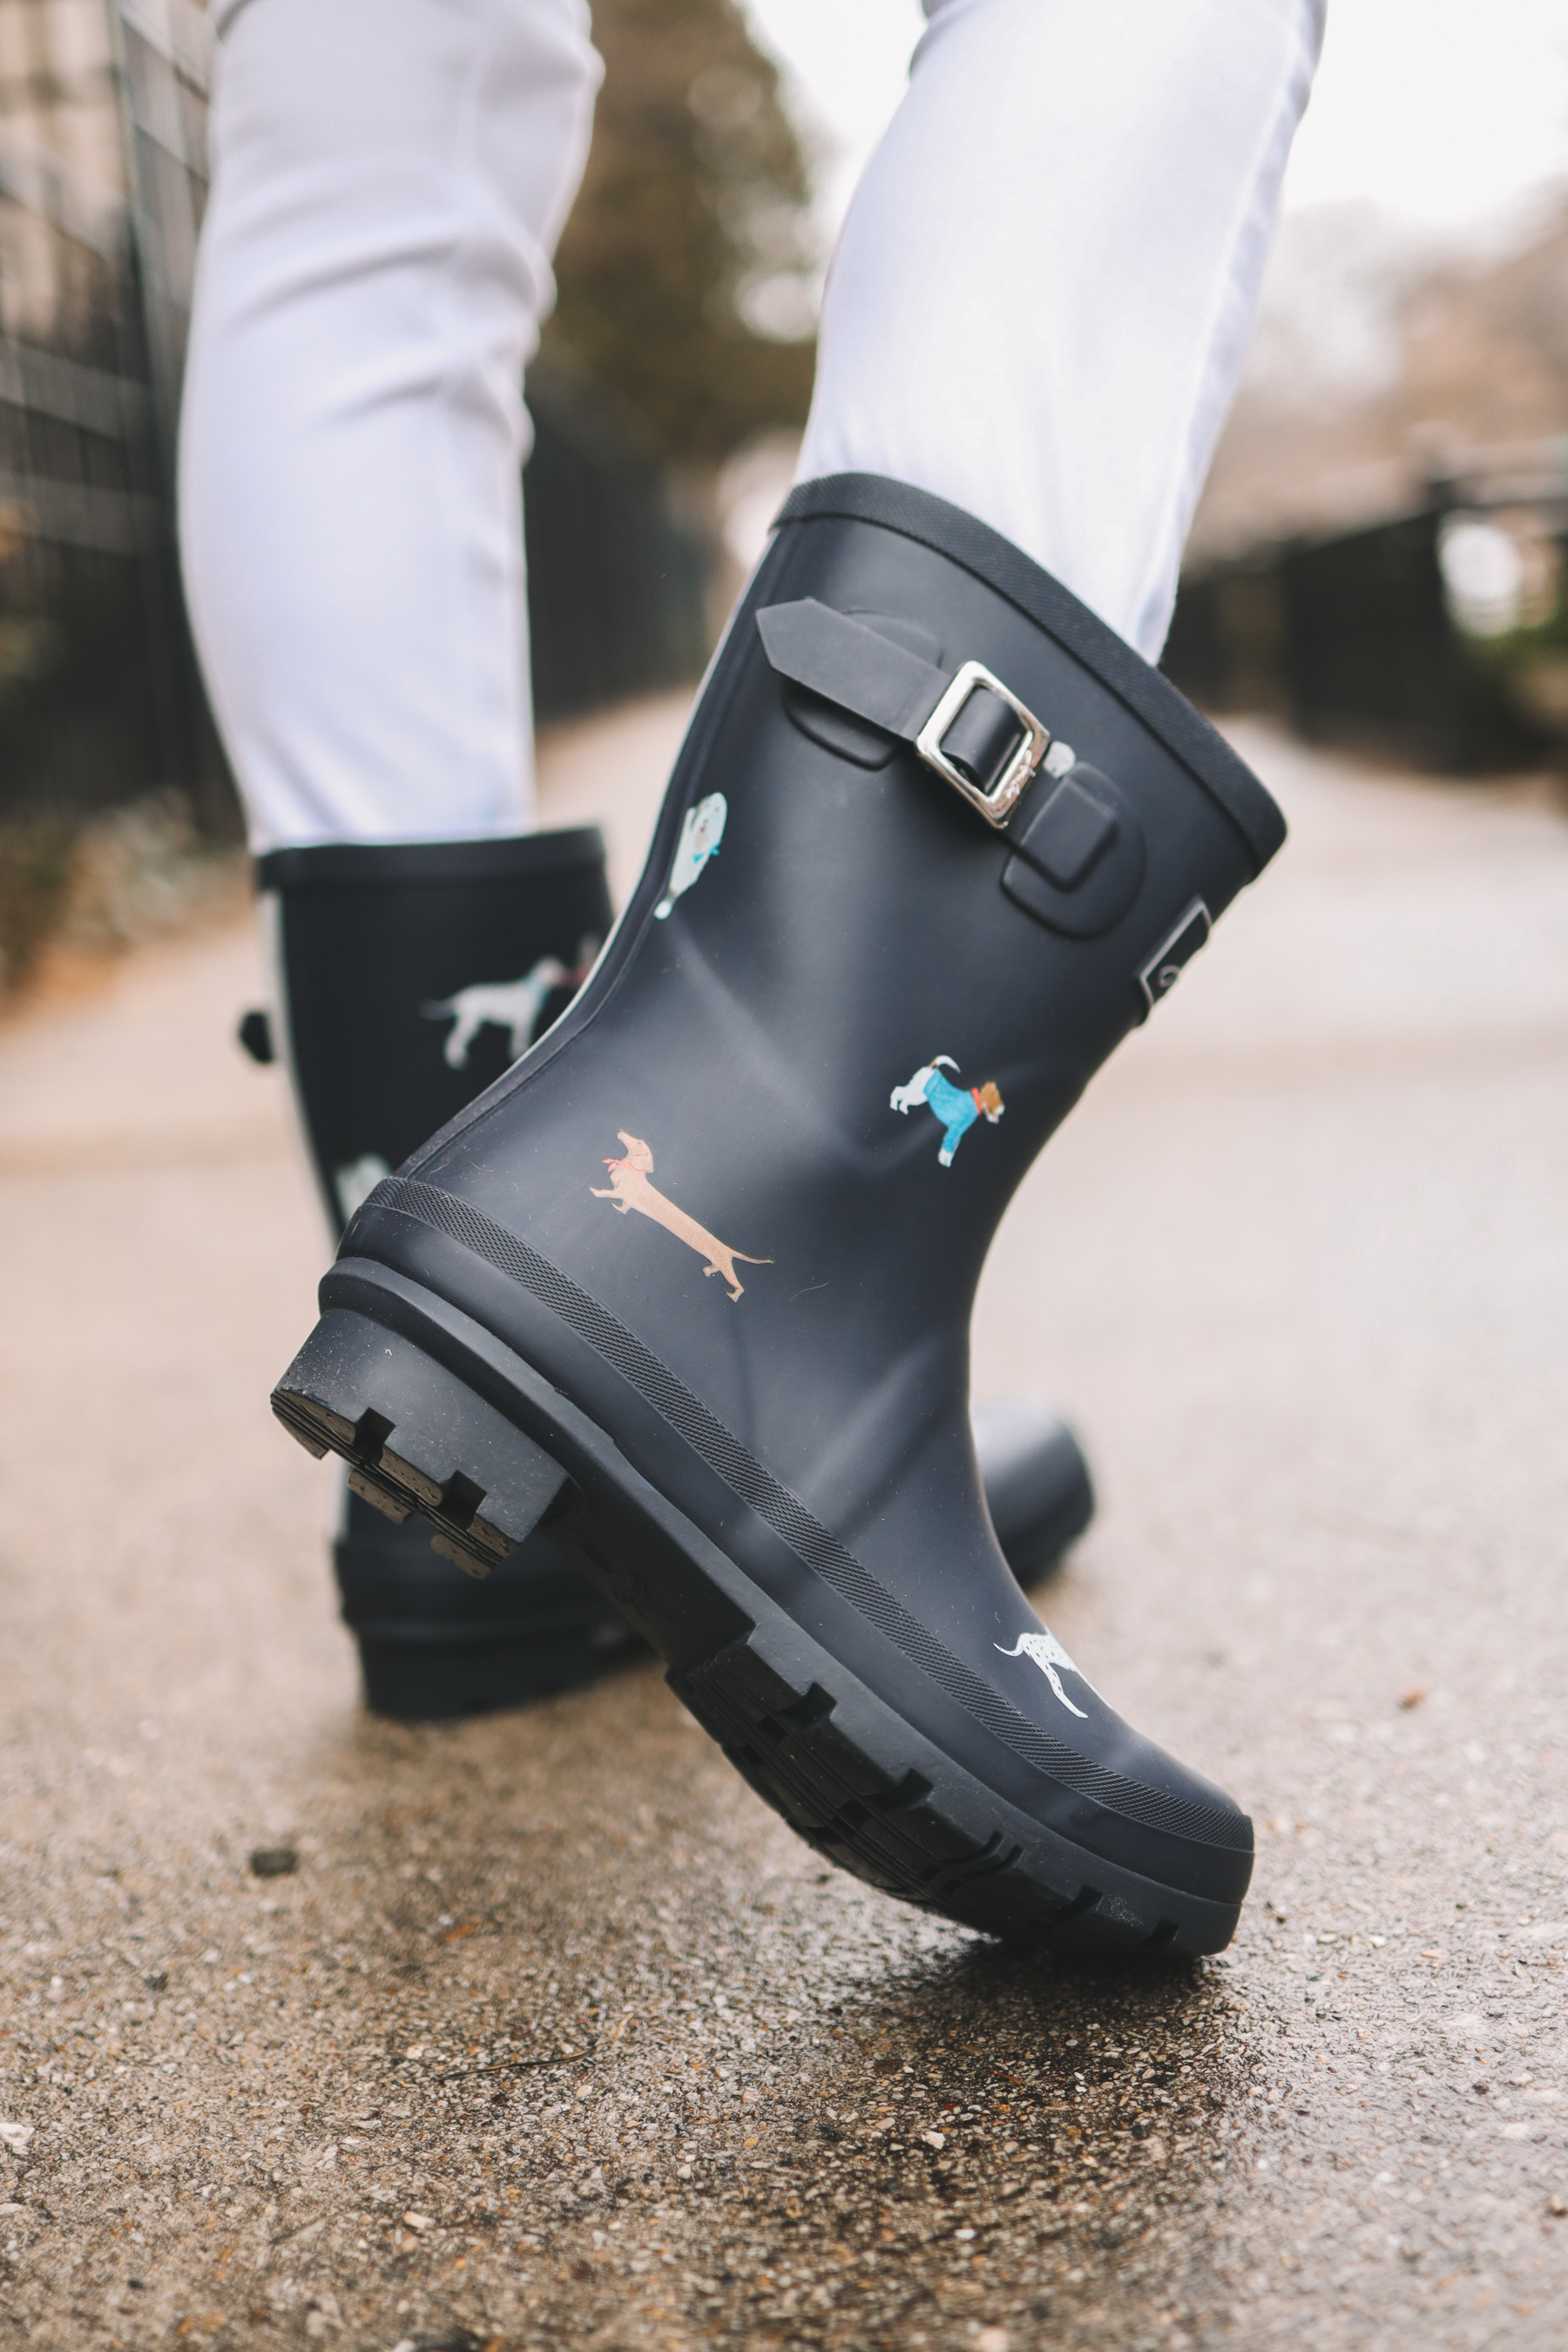 Joules' rain boots